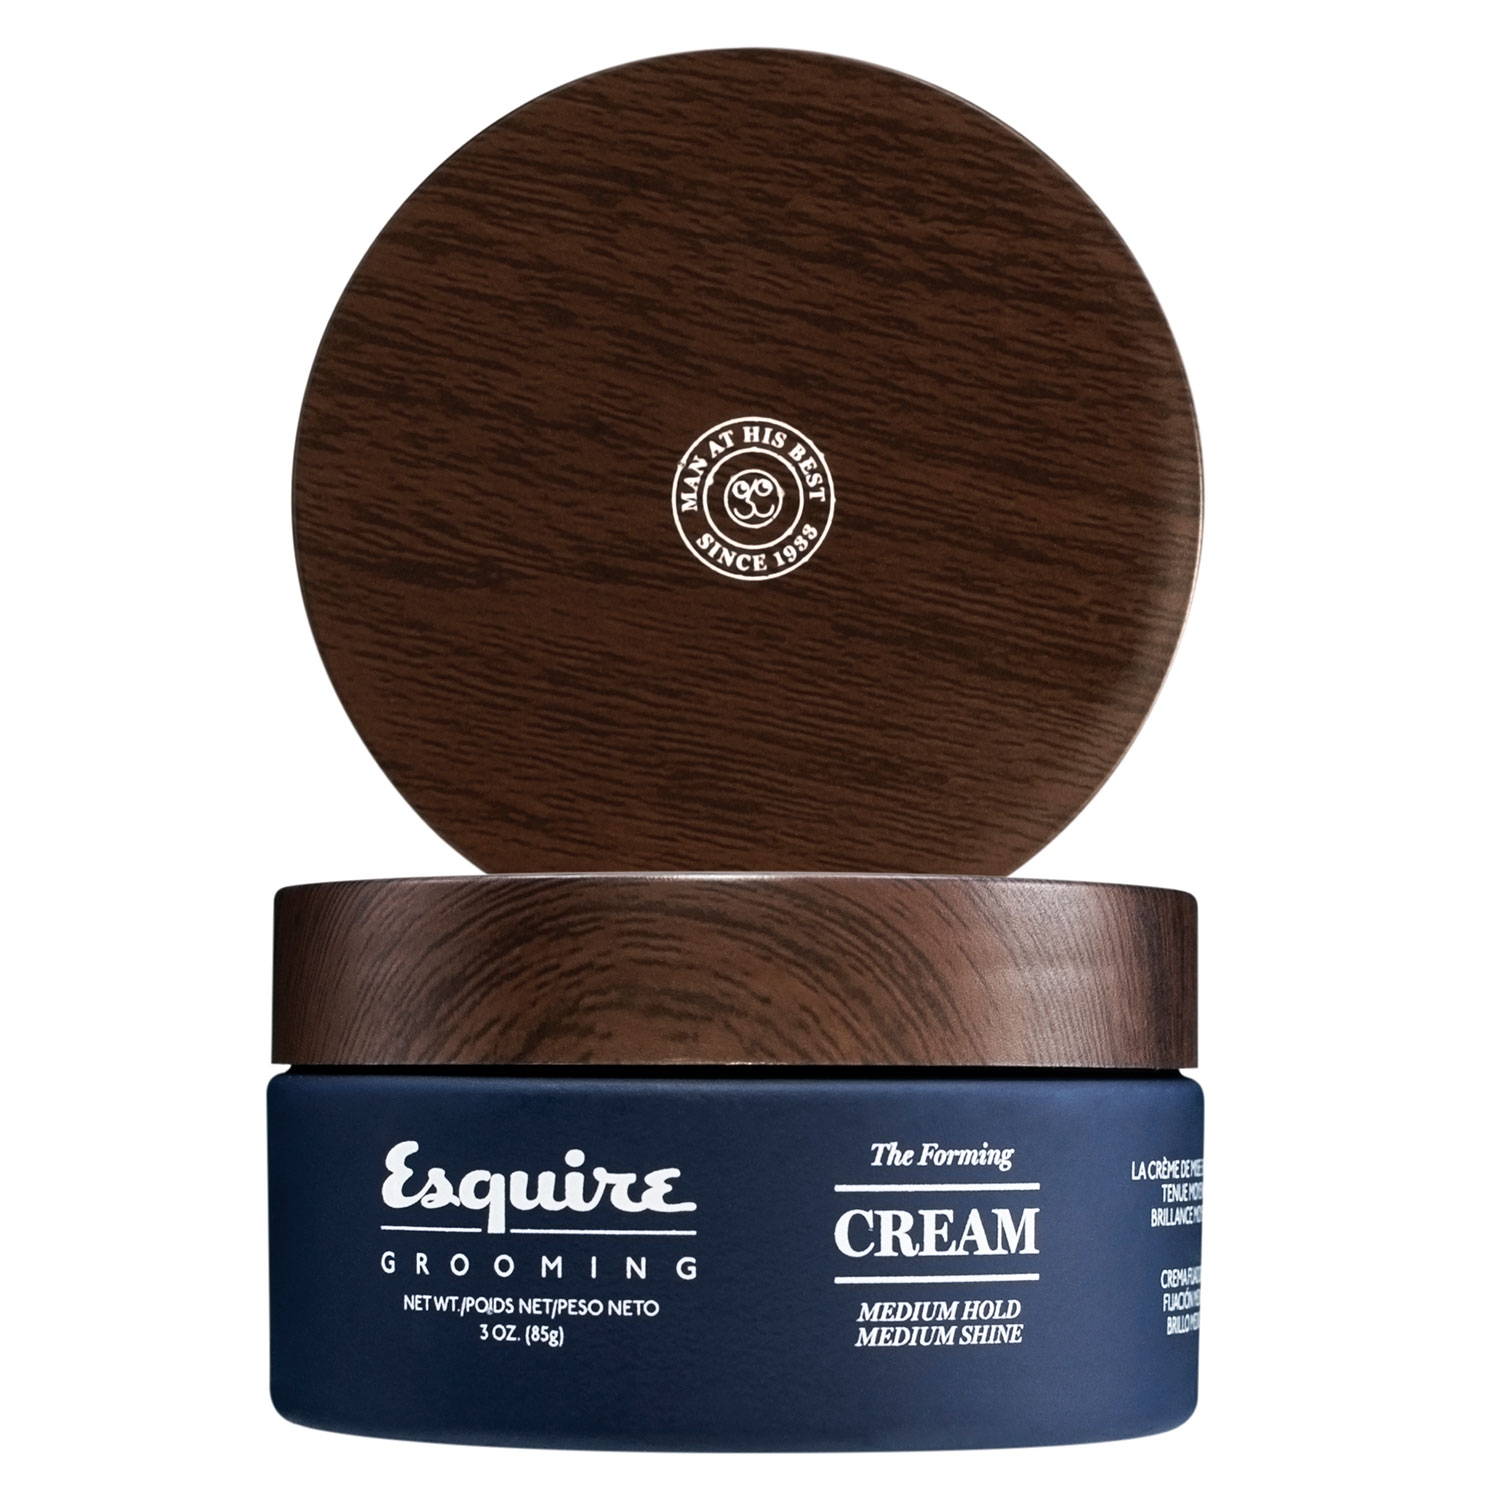 Produktbild von Esquire Styling - The Forming Cream